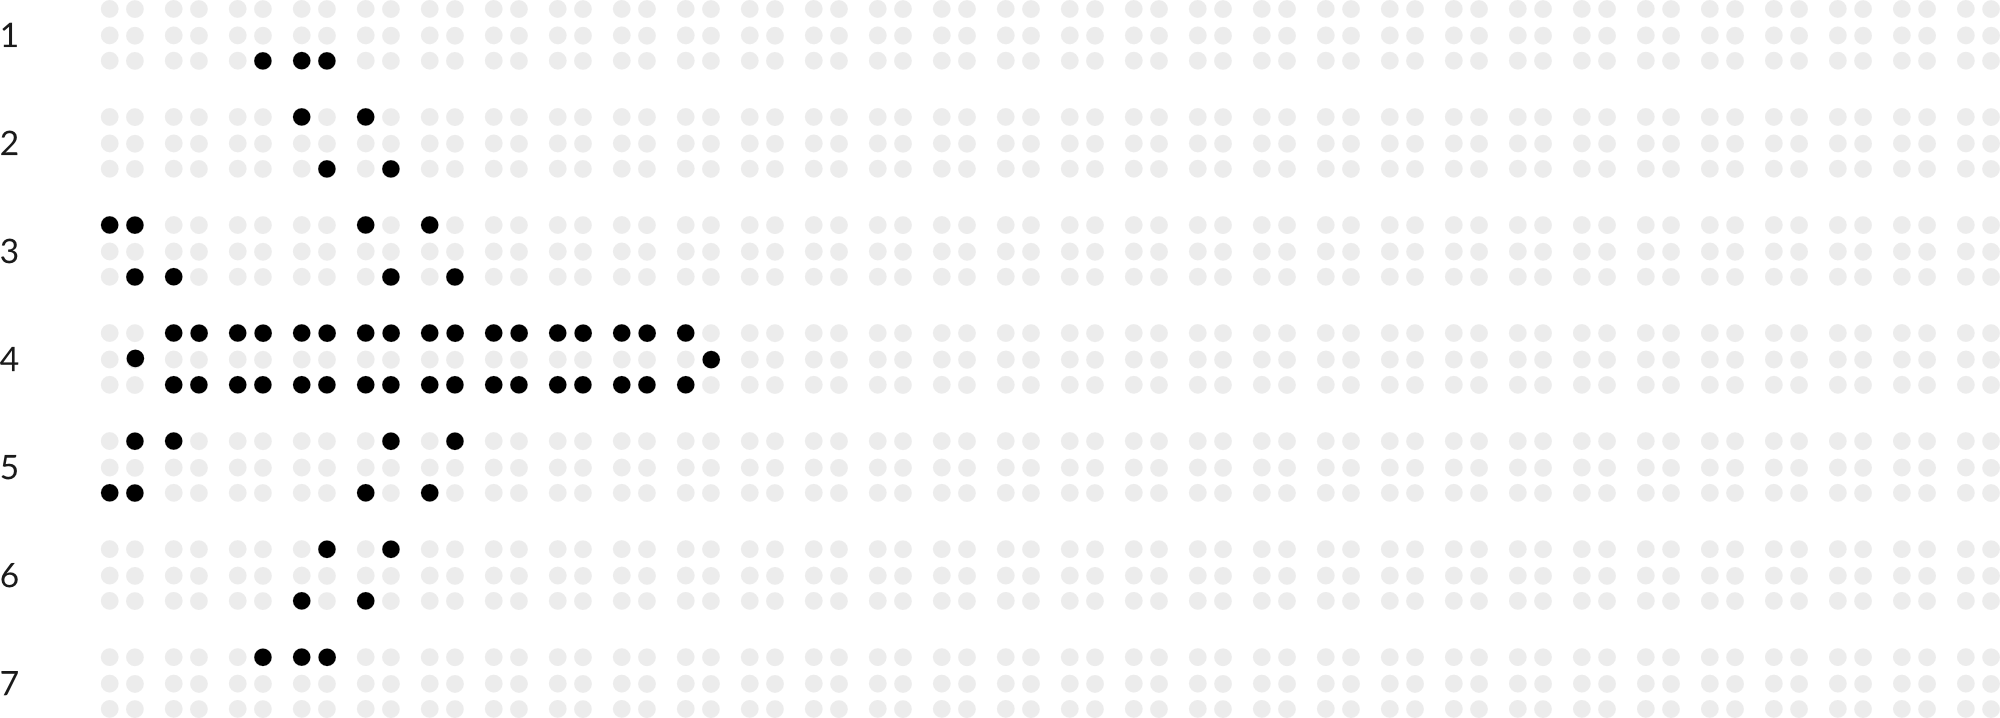 Braillebild mit Raster: Flugzeug 2